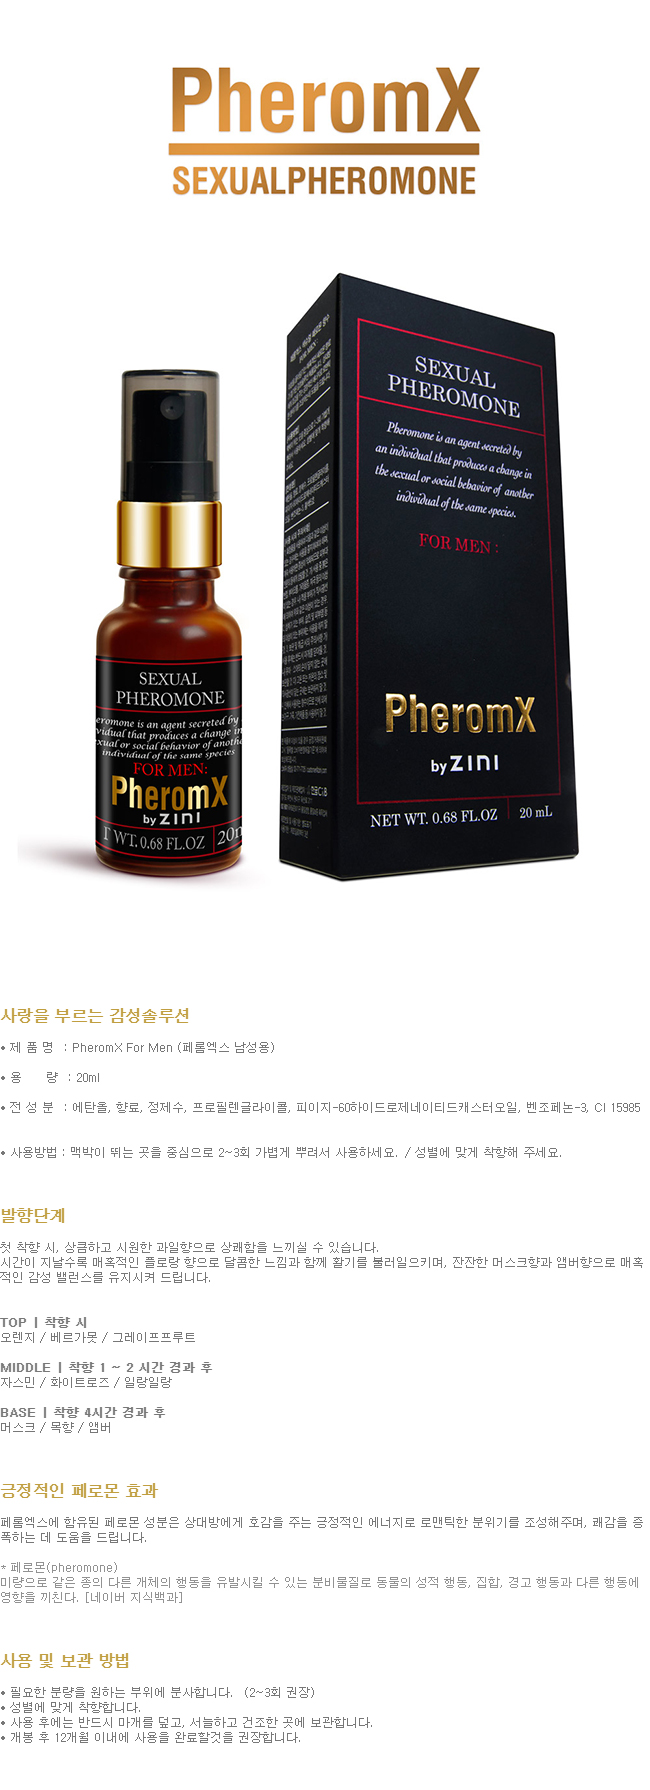 [여성 유혹] 페롬엑스 남성용  (PheromX for Men) - 페로몬 향수/지니